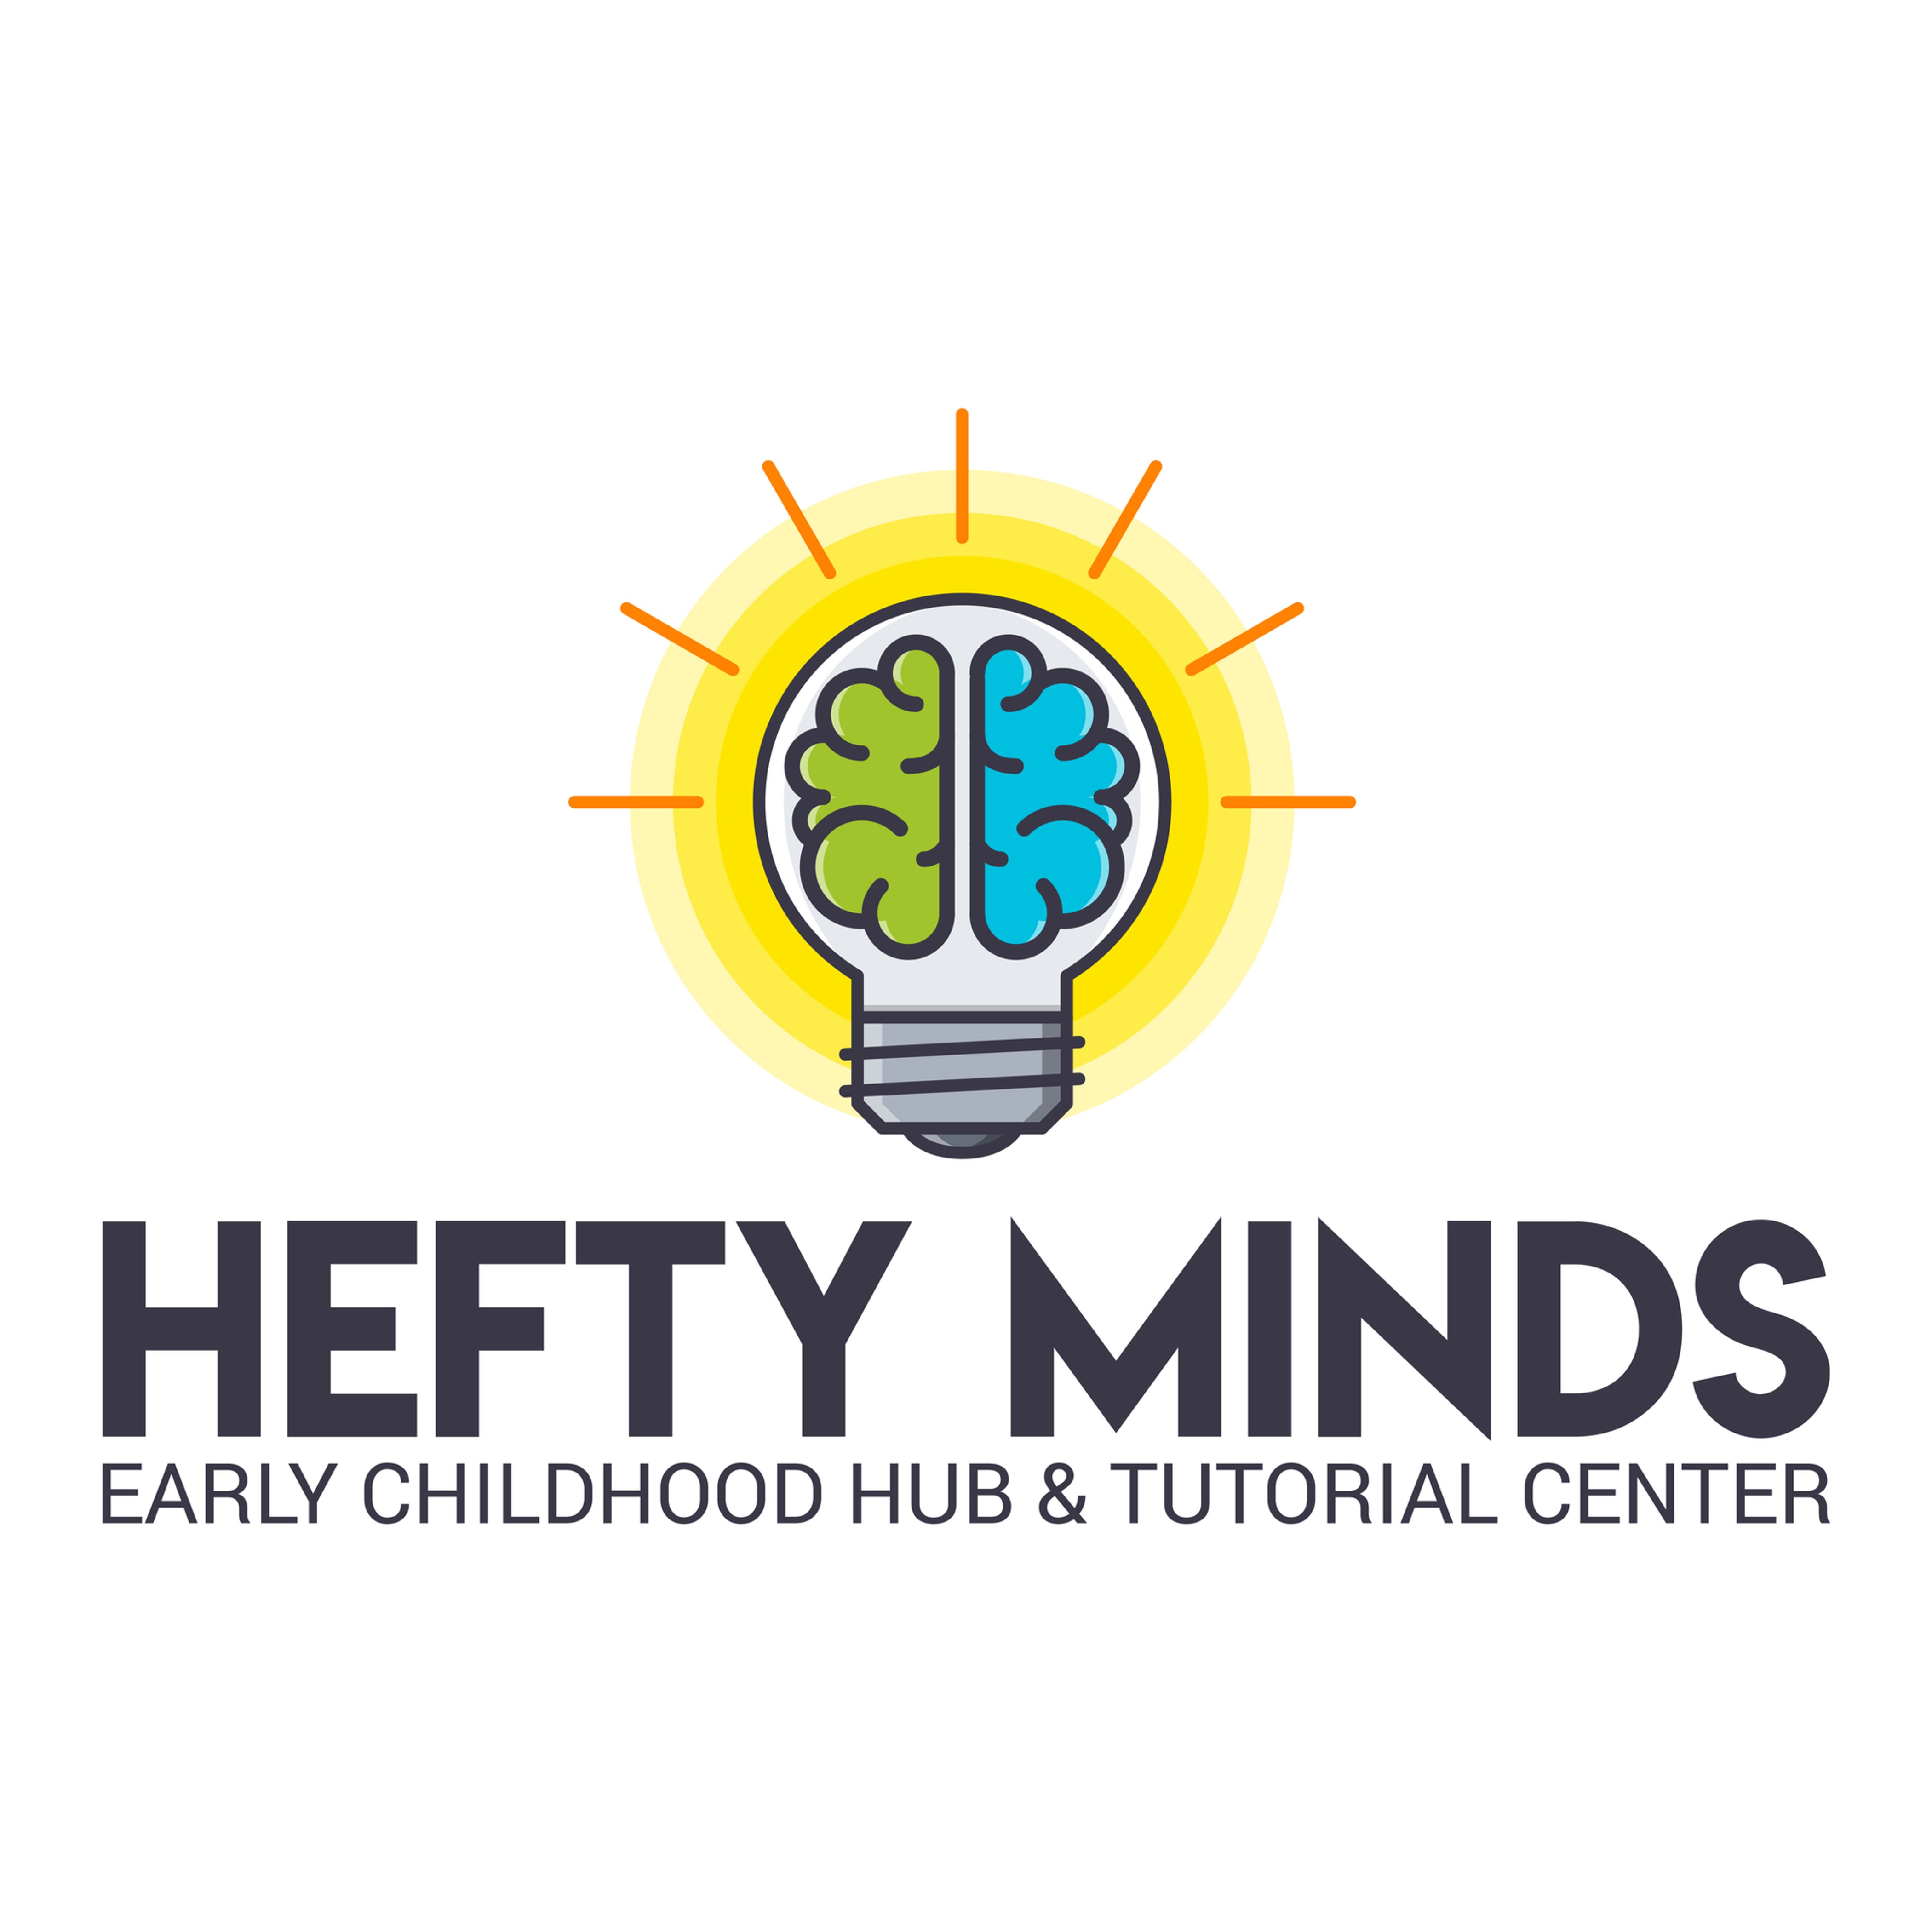 Hefty Minds Logo 04232018_Vertical.